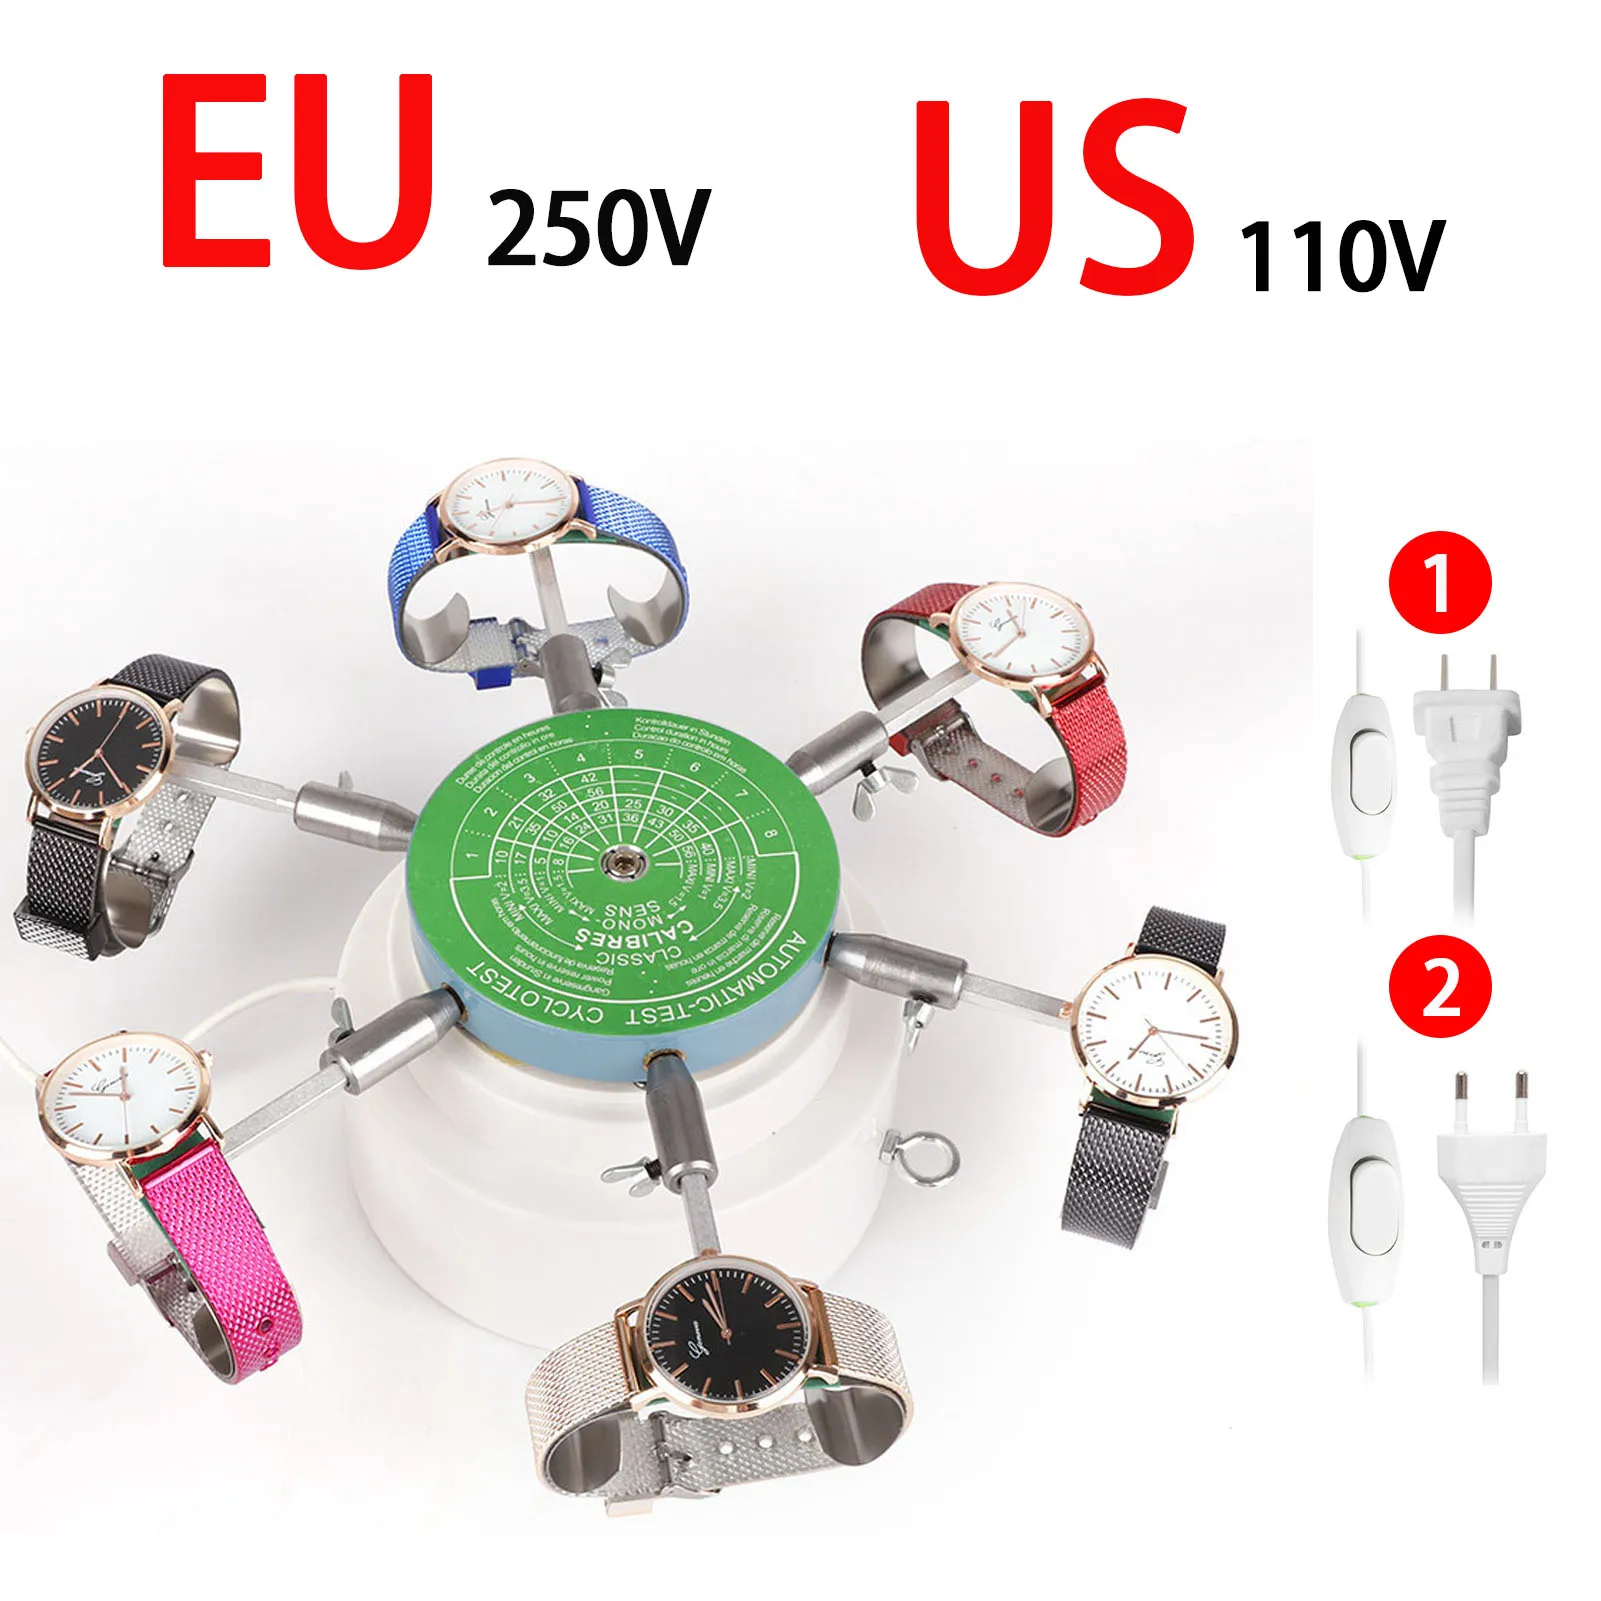 

Профессиональный инструмент для ремонта часов стандарта США/ЕС 110 В, 6-элементный автоматический циклотест